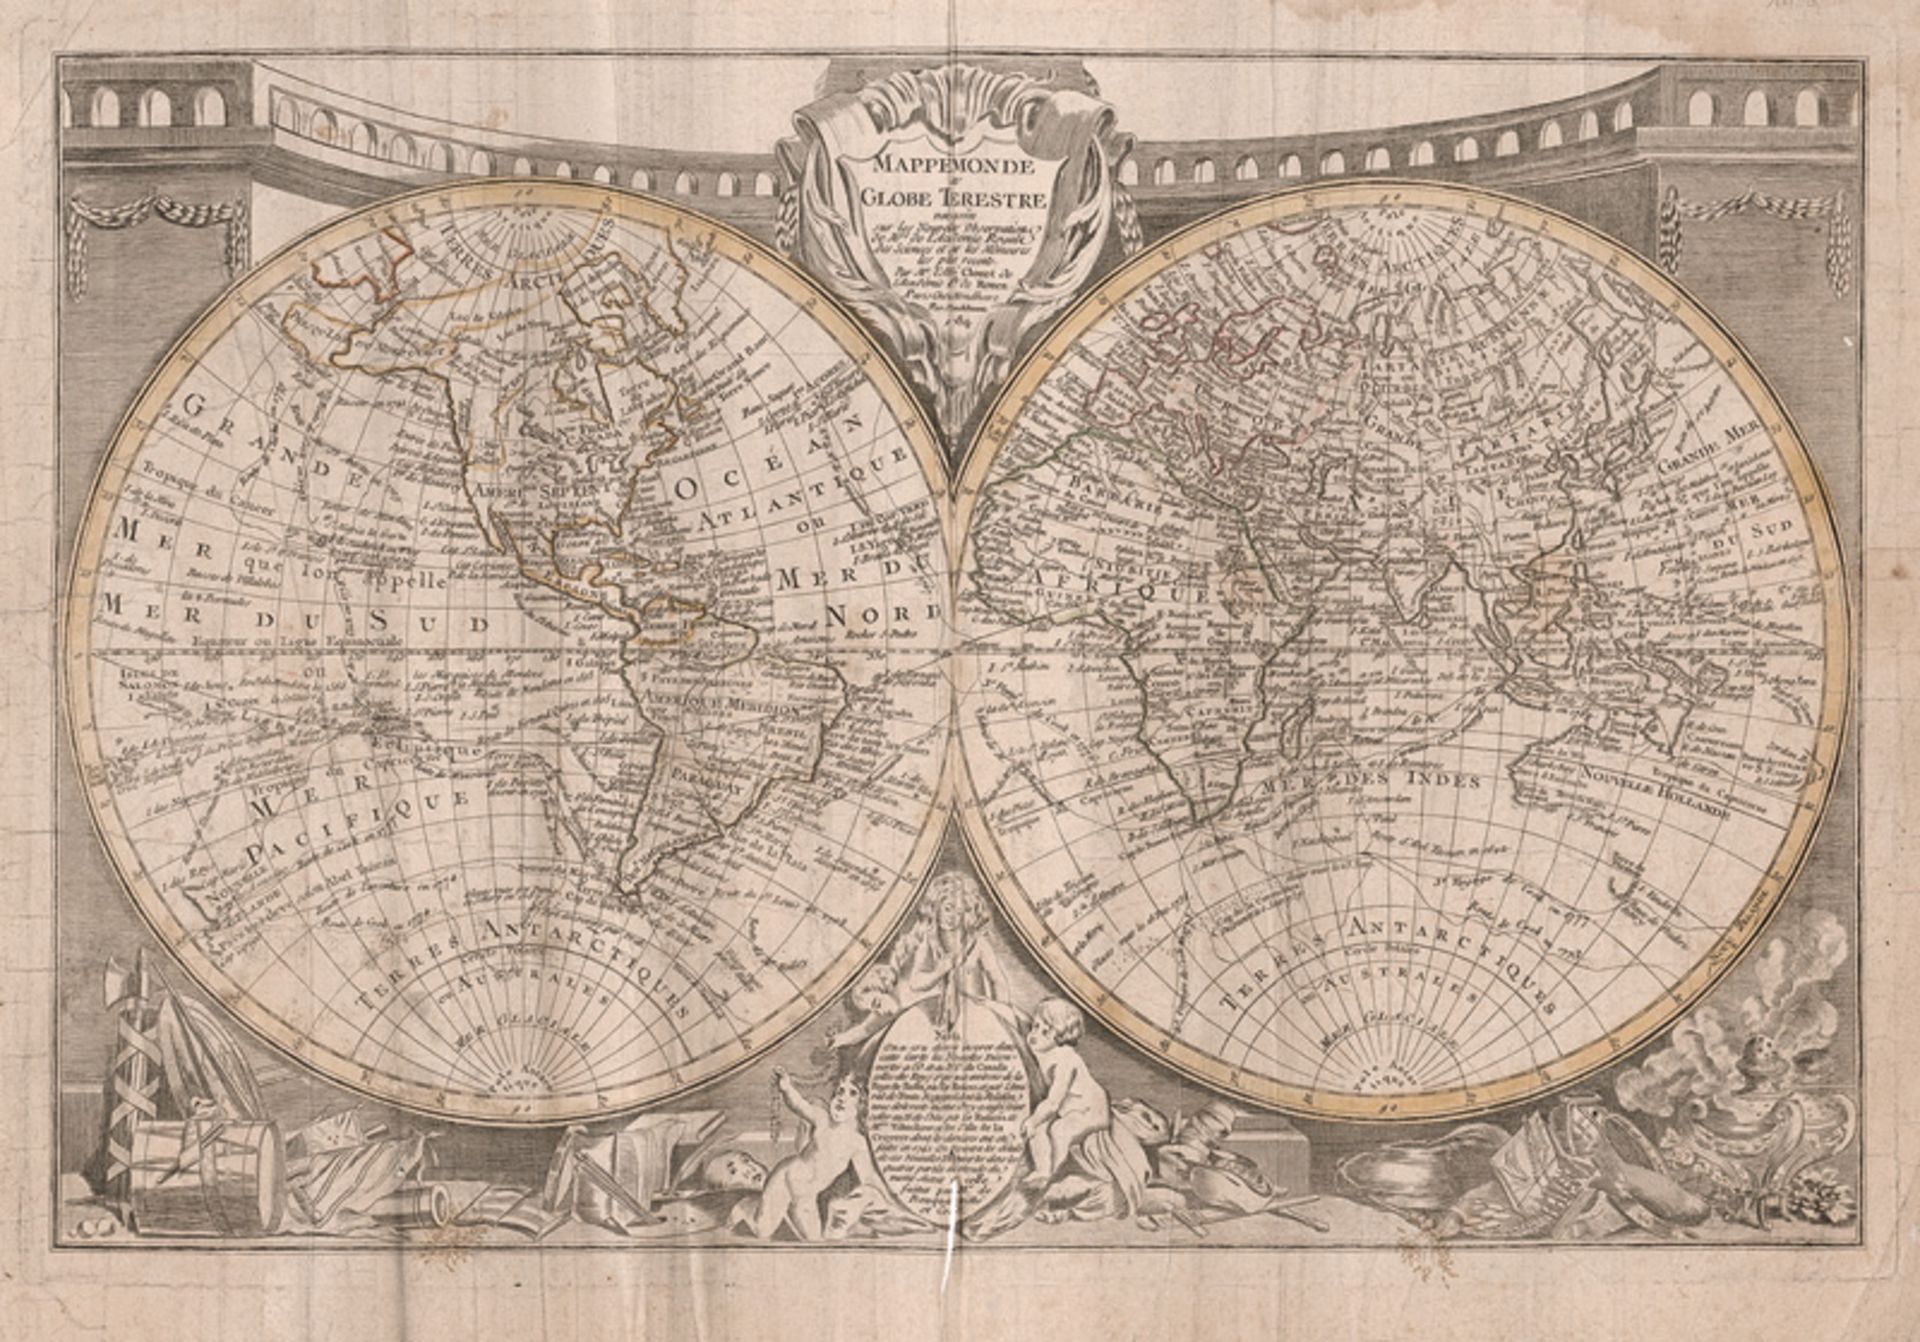 Cluet, Jean Baptiste Louis: Mappemonde ou globe terestre